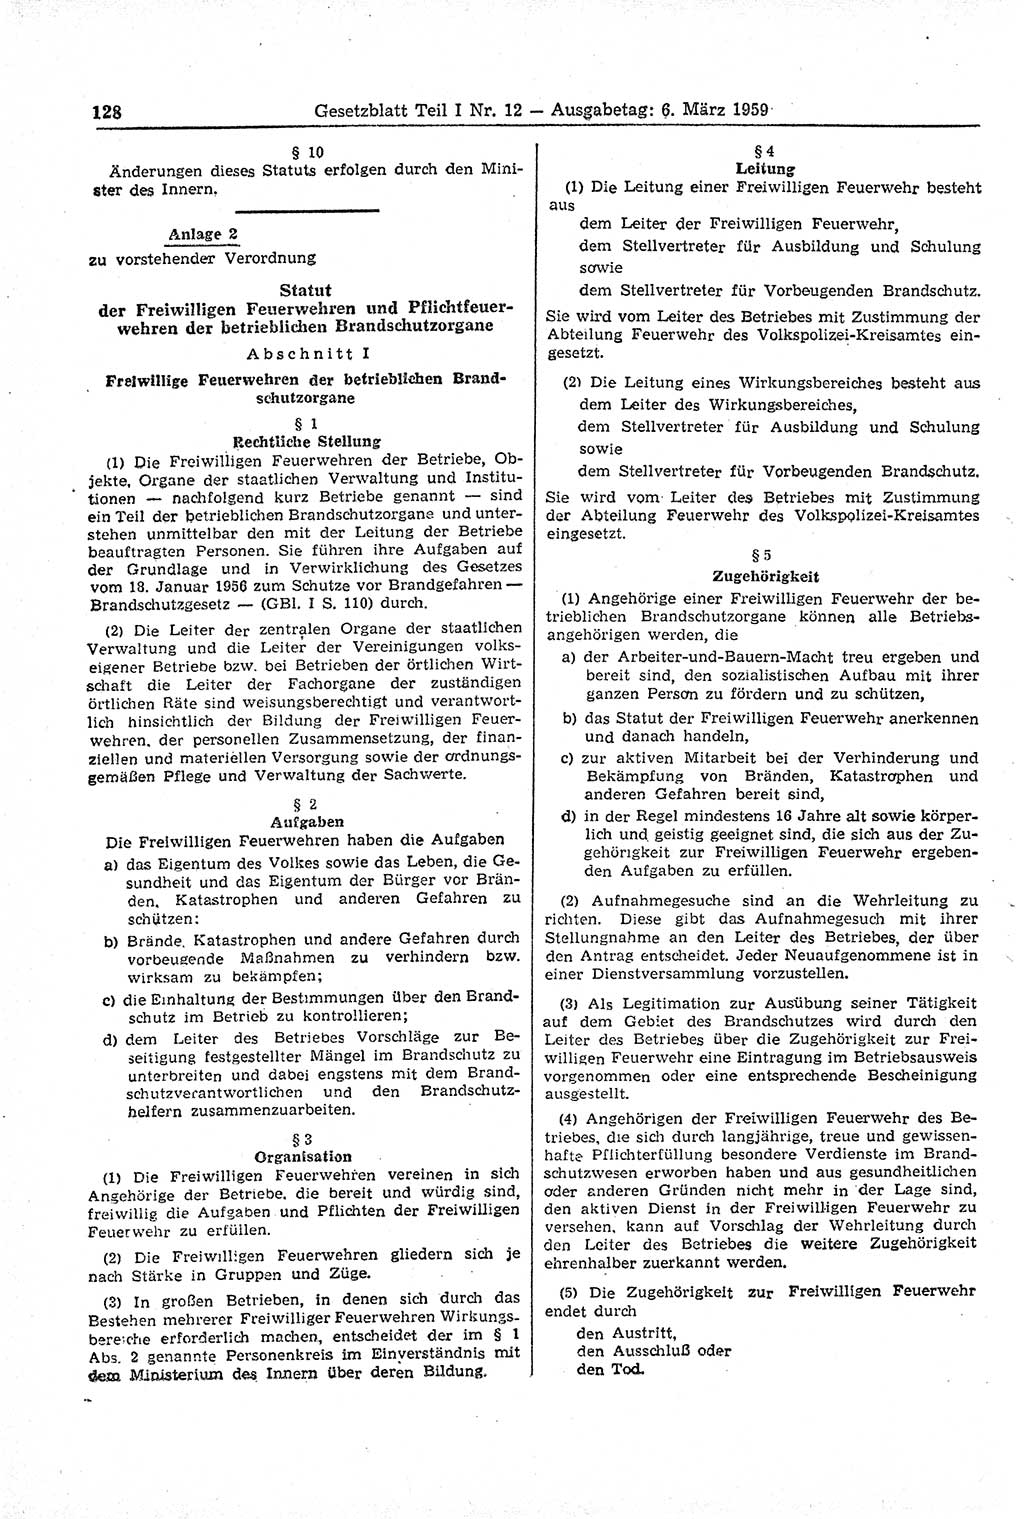 Gesetzblatt (GBl.) der Deutschen Demokratischen Republik (DDR) Teil Ⅰ 1959, Seite 128 (GBl. DDR Ⅰ 1959, S. 128)